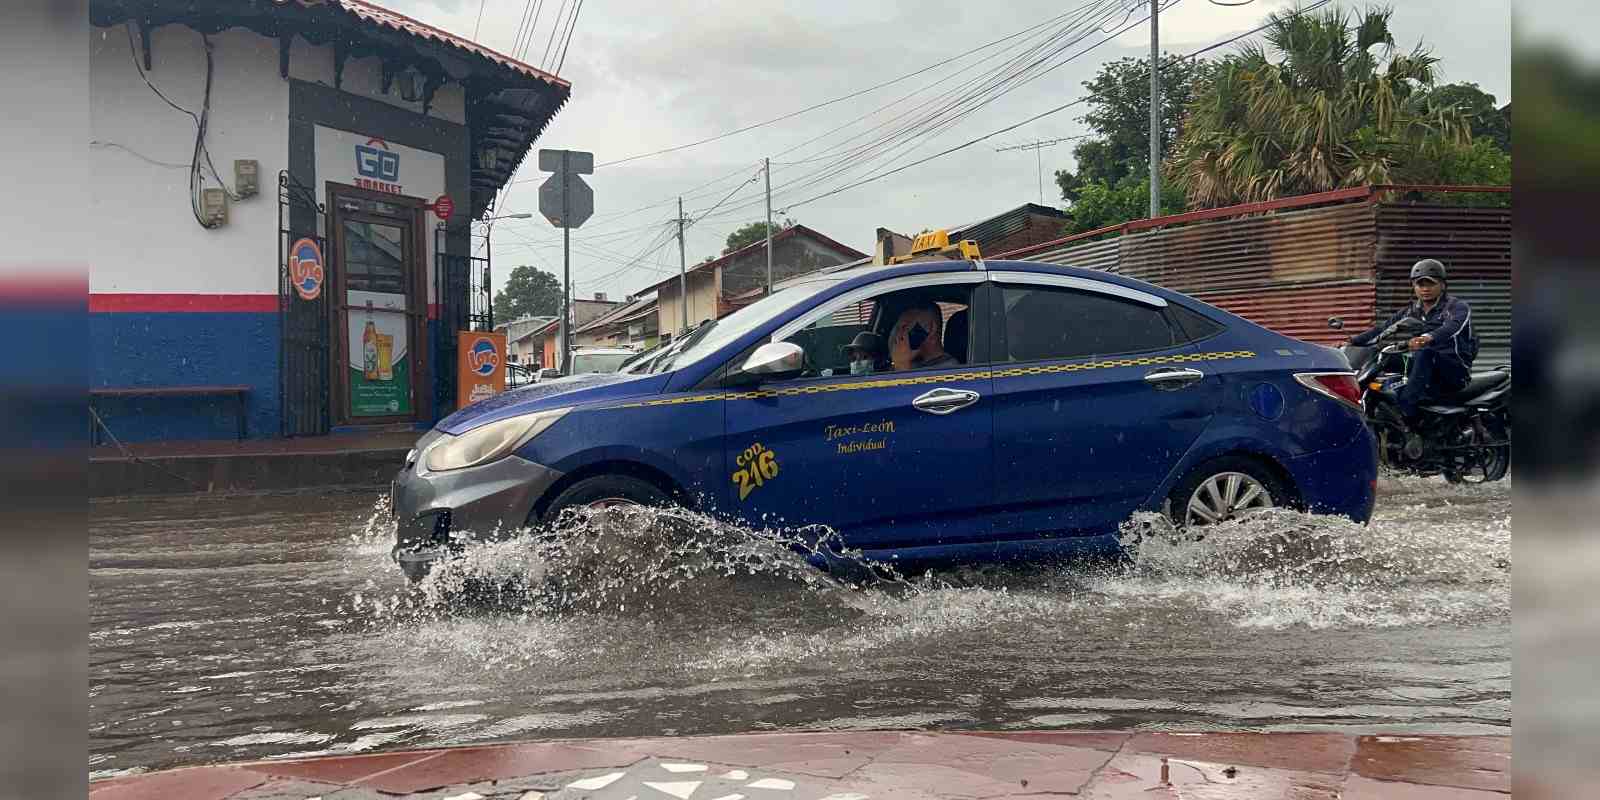 La falta de drenajes pluviales agudiza la problemática de inundaciones en la ciudad de León.